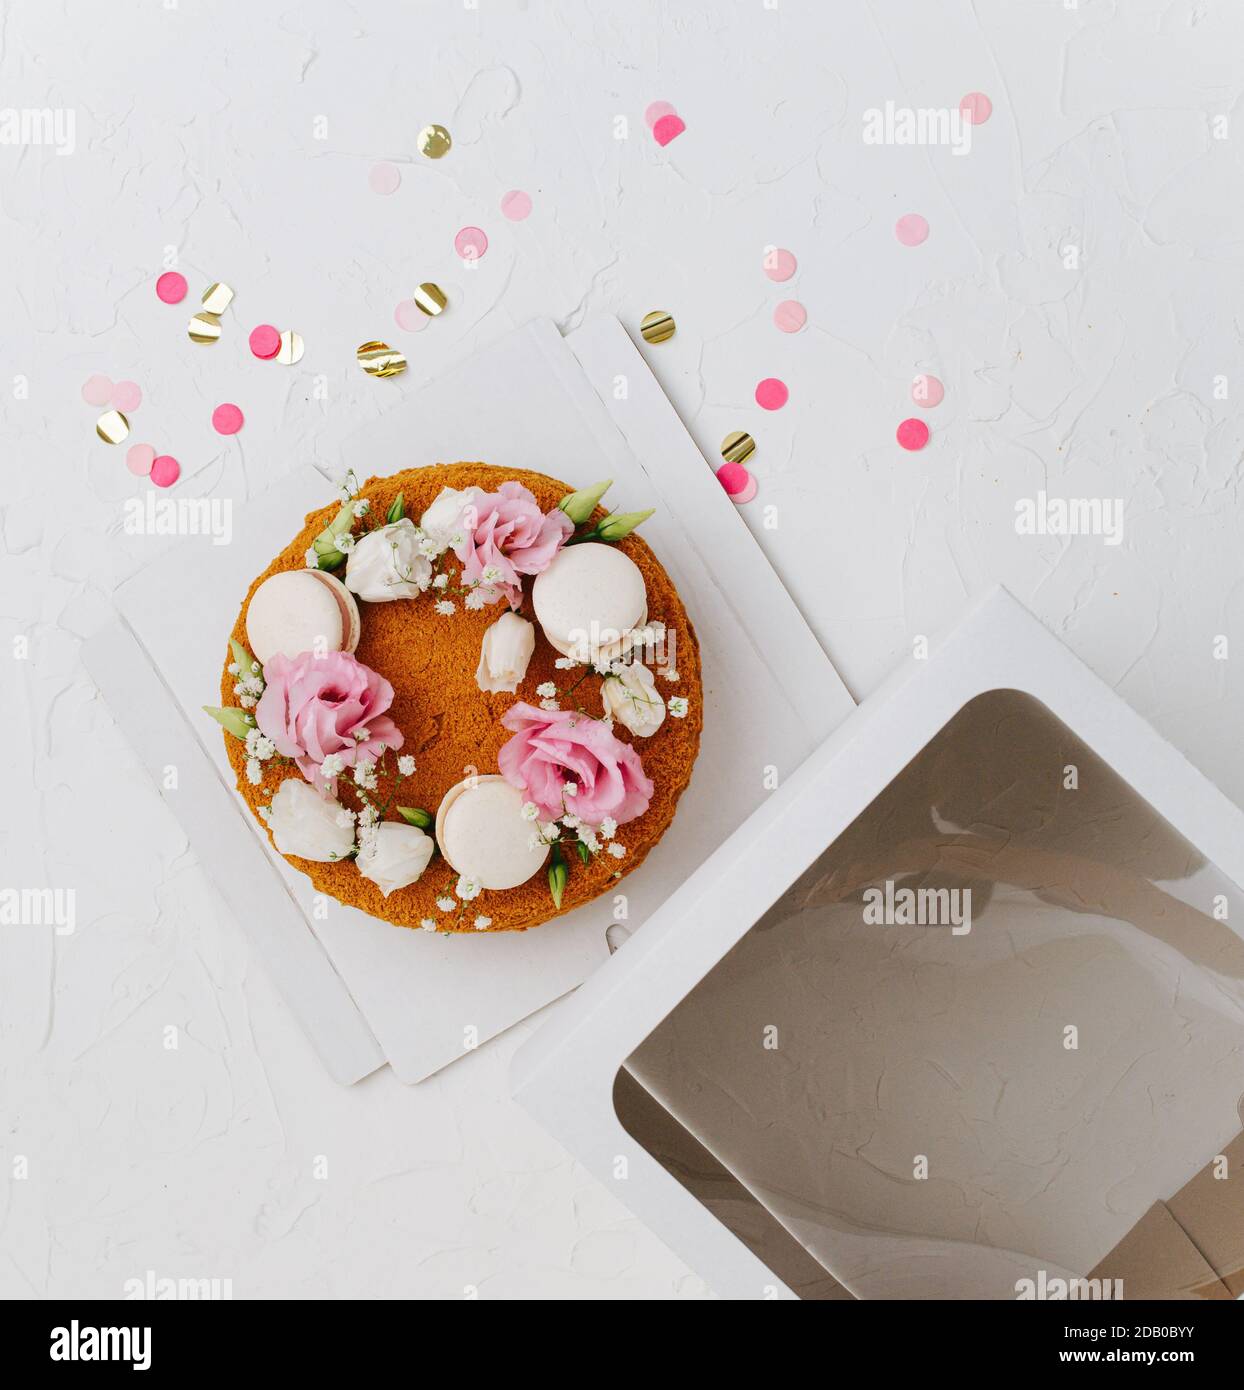 Draufsicht auf einen Honigkuchen mit Blumen auf einem Box Basis neben Fenster oben Stockfoto